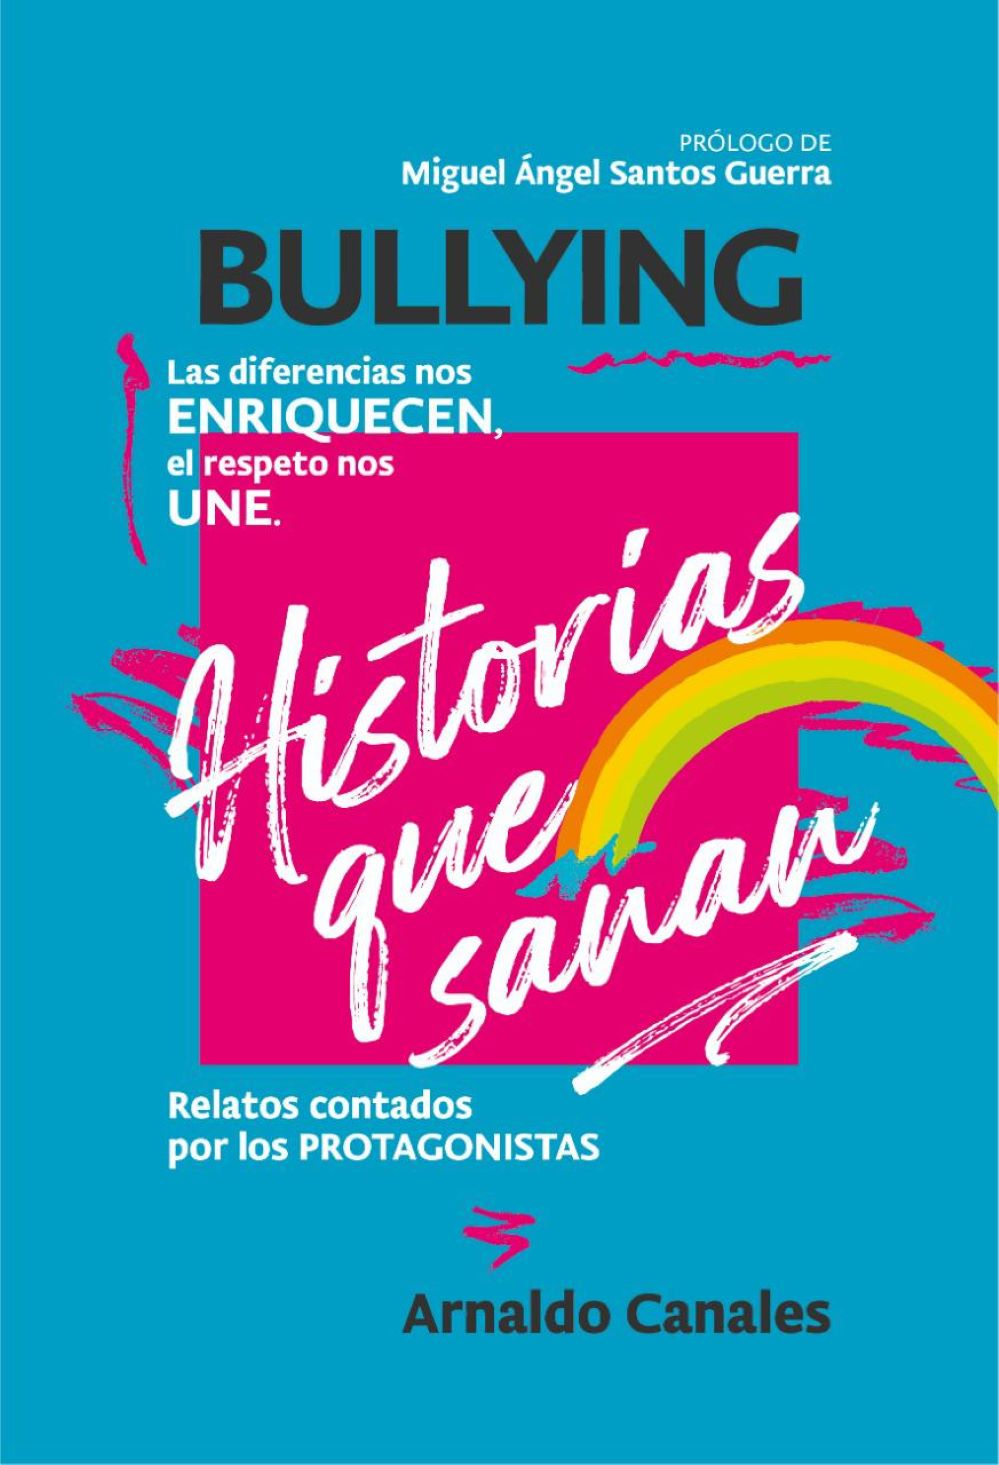 “Historias que sanan”: Una radiografía literaria del bullying en Chile y América Latina